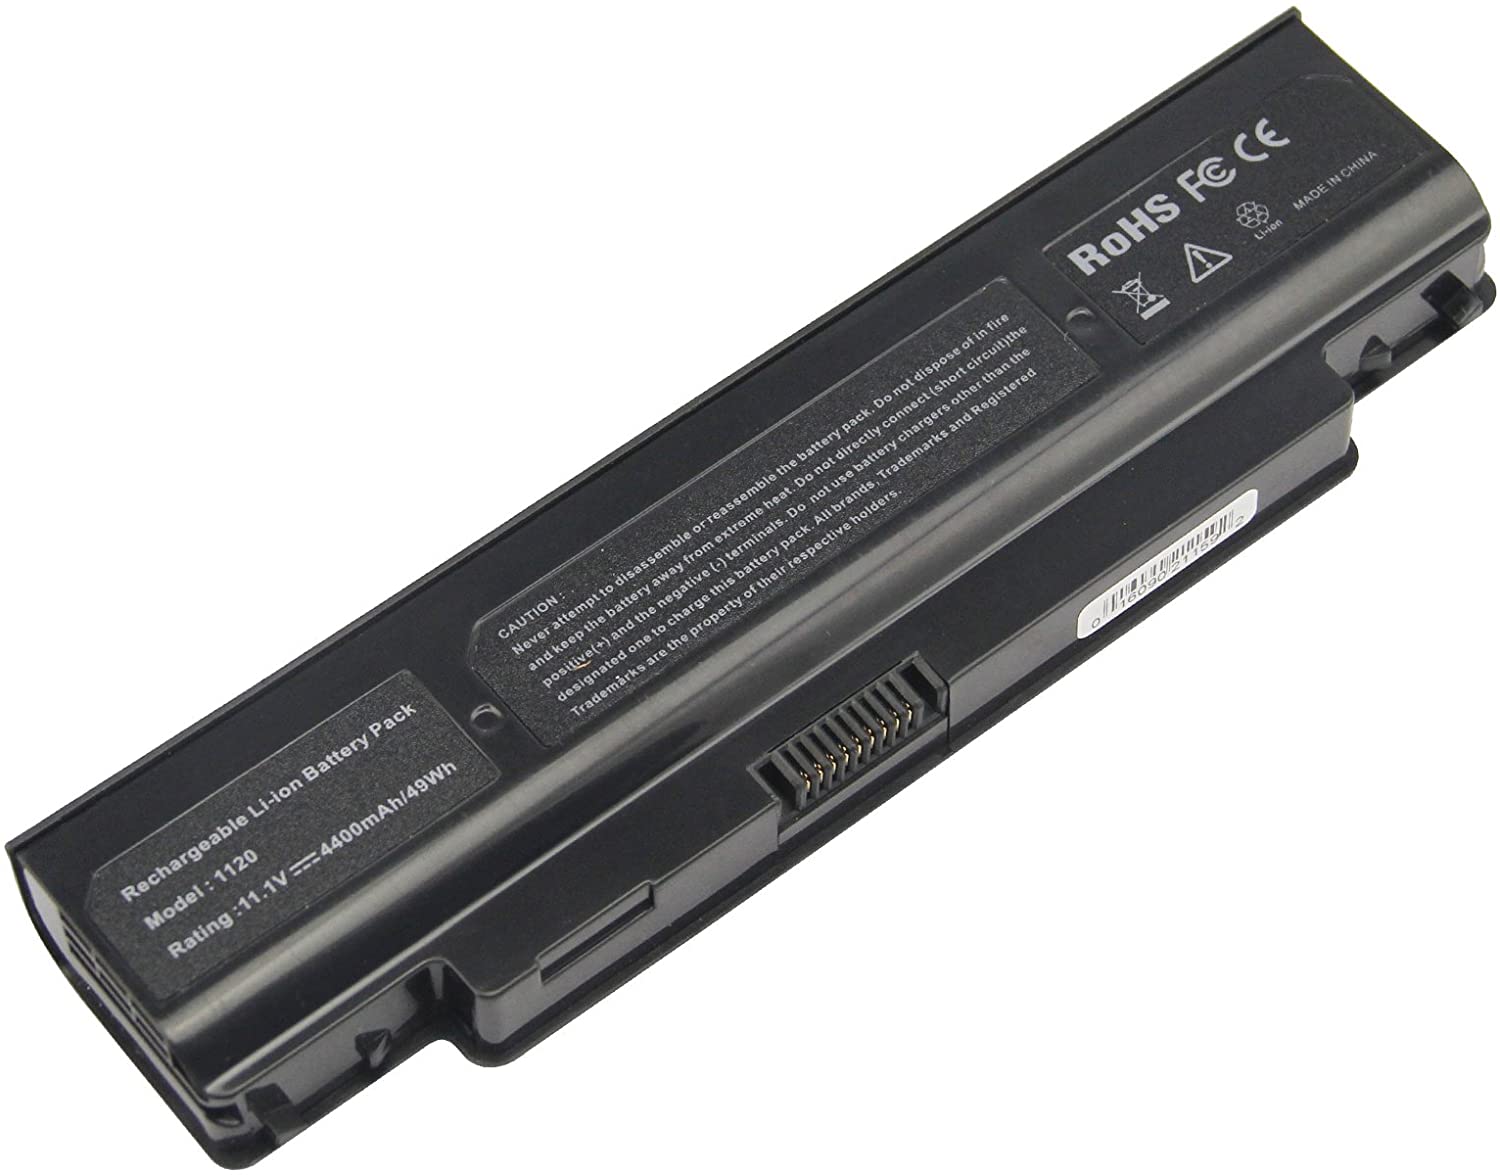 Laptop Battery for Dell 02XRG7 079N07 2XRG7 312-0251 79N07 D75H4 P07T P07T001 P07T002